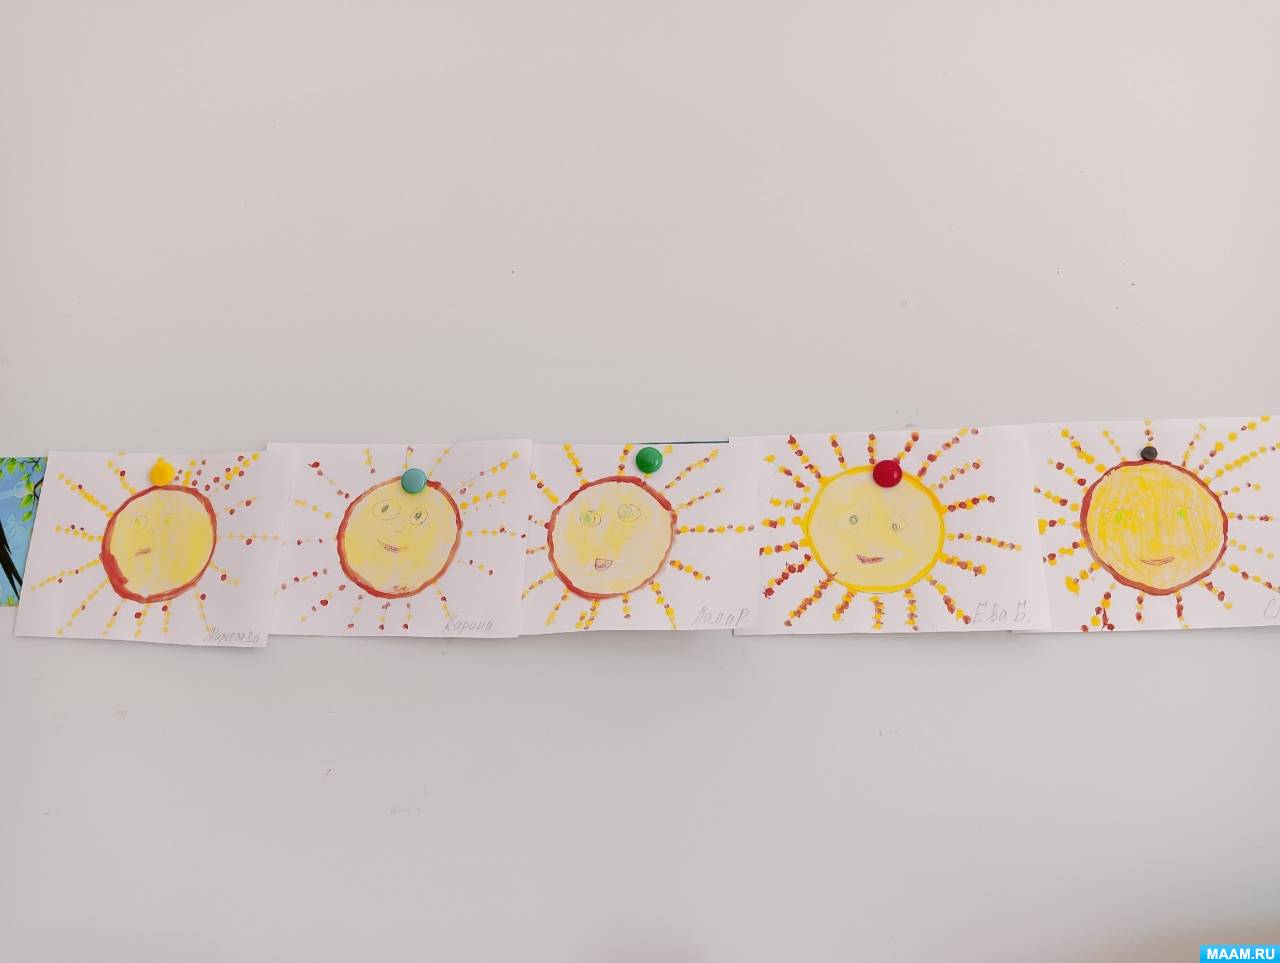 Мастер-класс по рисованию с применением техники печатания ватными палочками «Наше солнышко» в средней группе